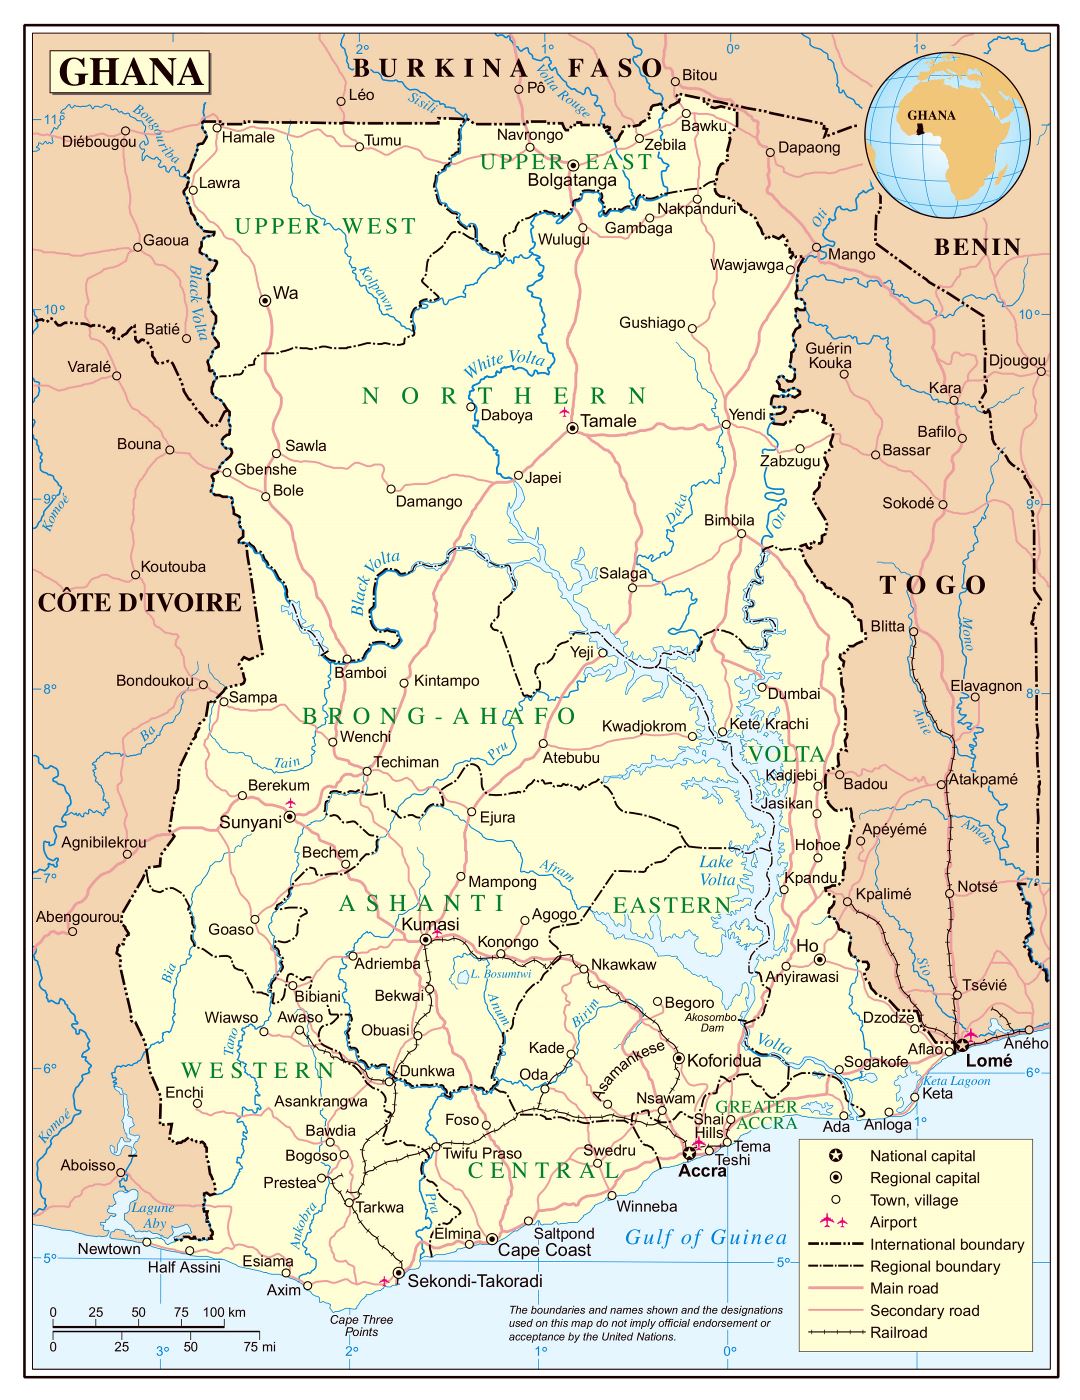 Большая детальная политическая и административная карта Ганы с дорогами, железными дорогами, городами и аэропортами